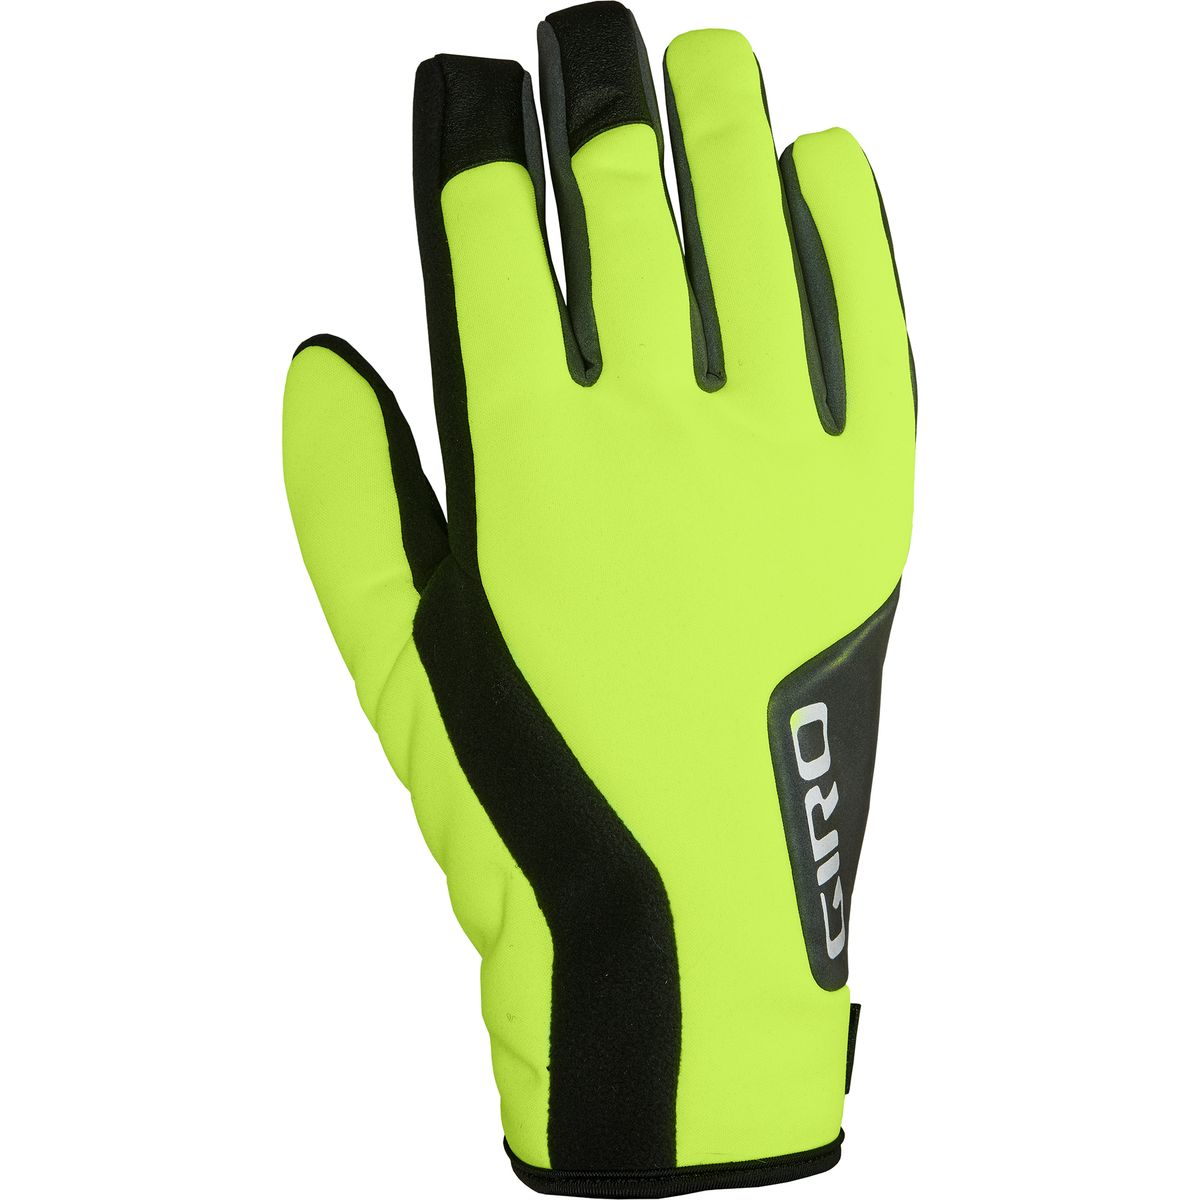 Giro Ambient II Glove - Men's Highlight Yellow/Black, XXL